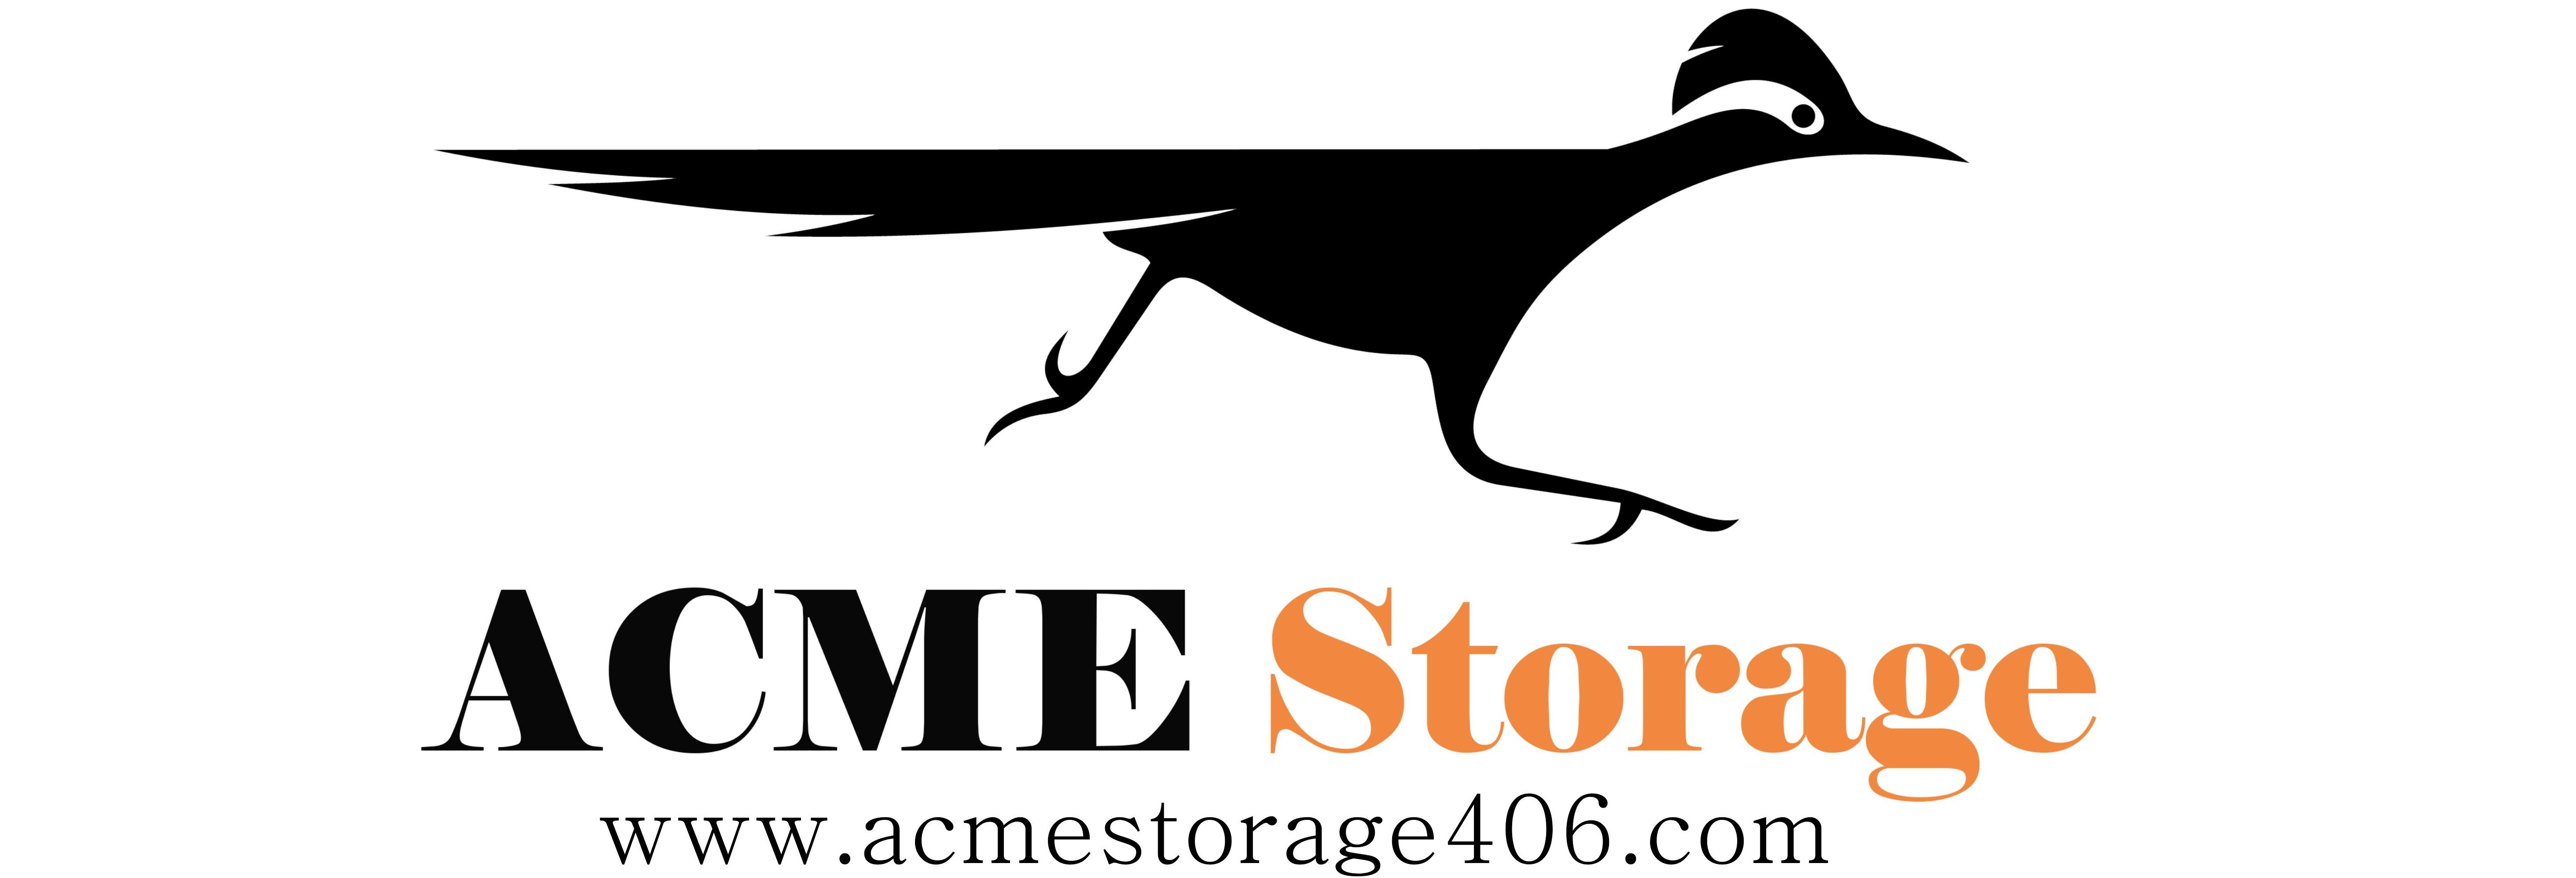 ACME Storage in Belgrade, MT